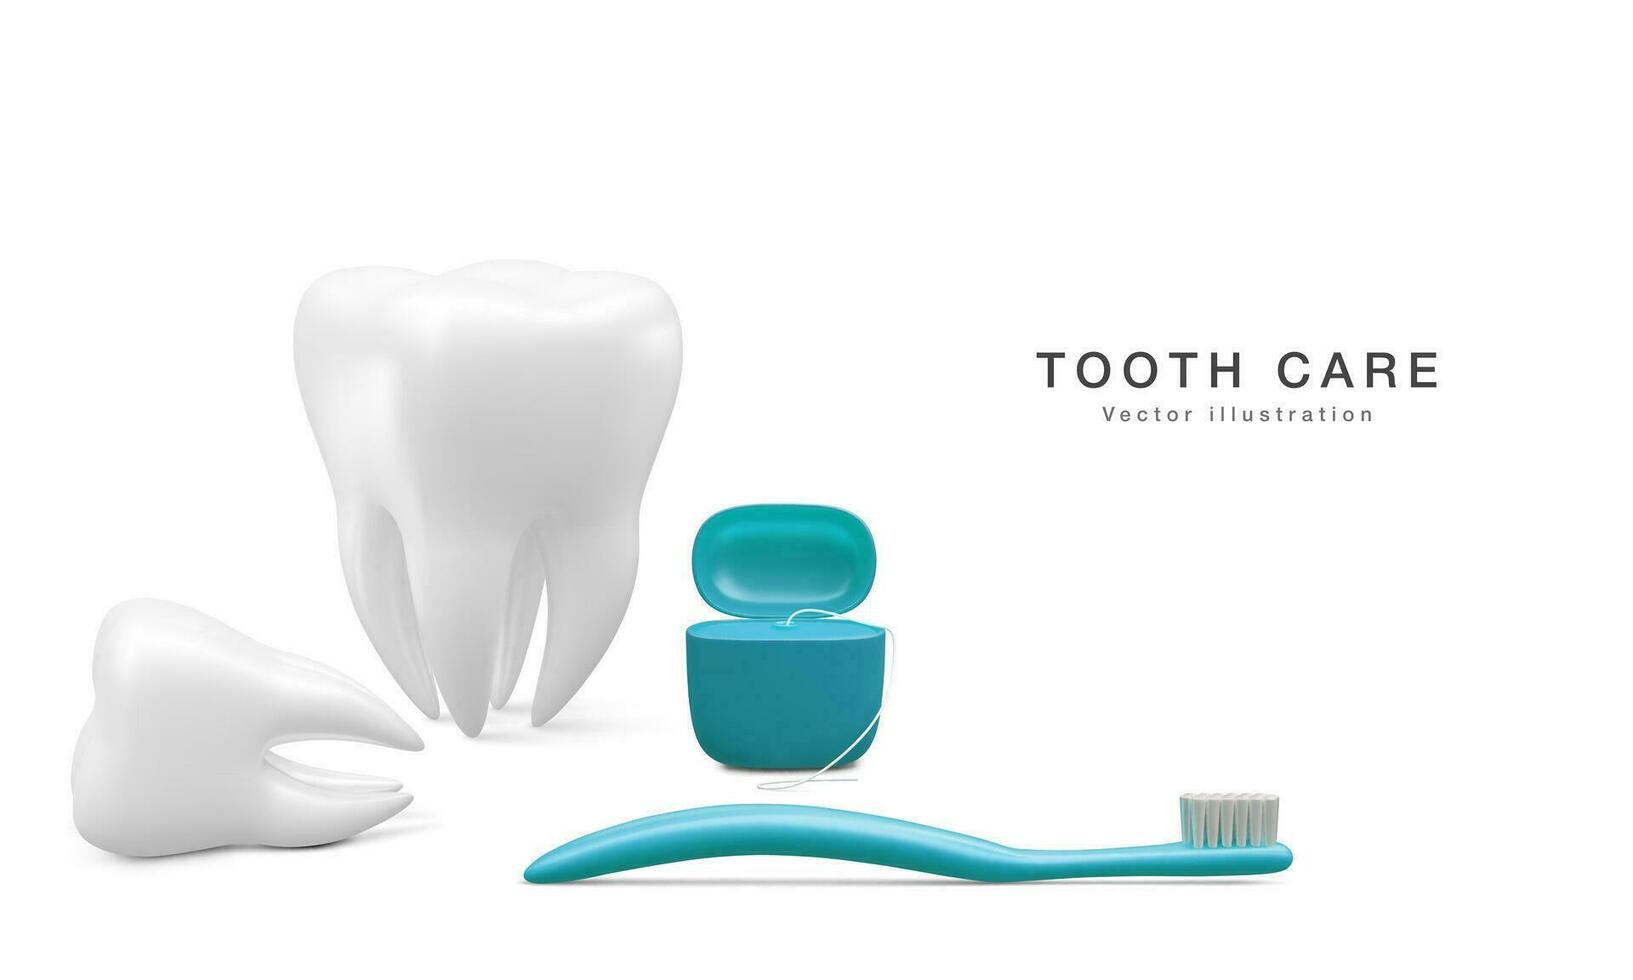 realistisk tand och dental verktyg för tänder isolerat på vit bakgrund. medicinsk tandläkare verktyg. tandvård, sjukvård, hygien begrepp. vektor illustration